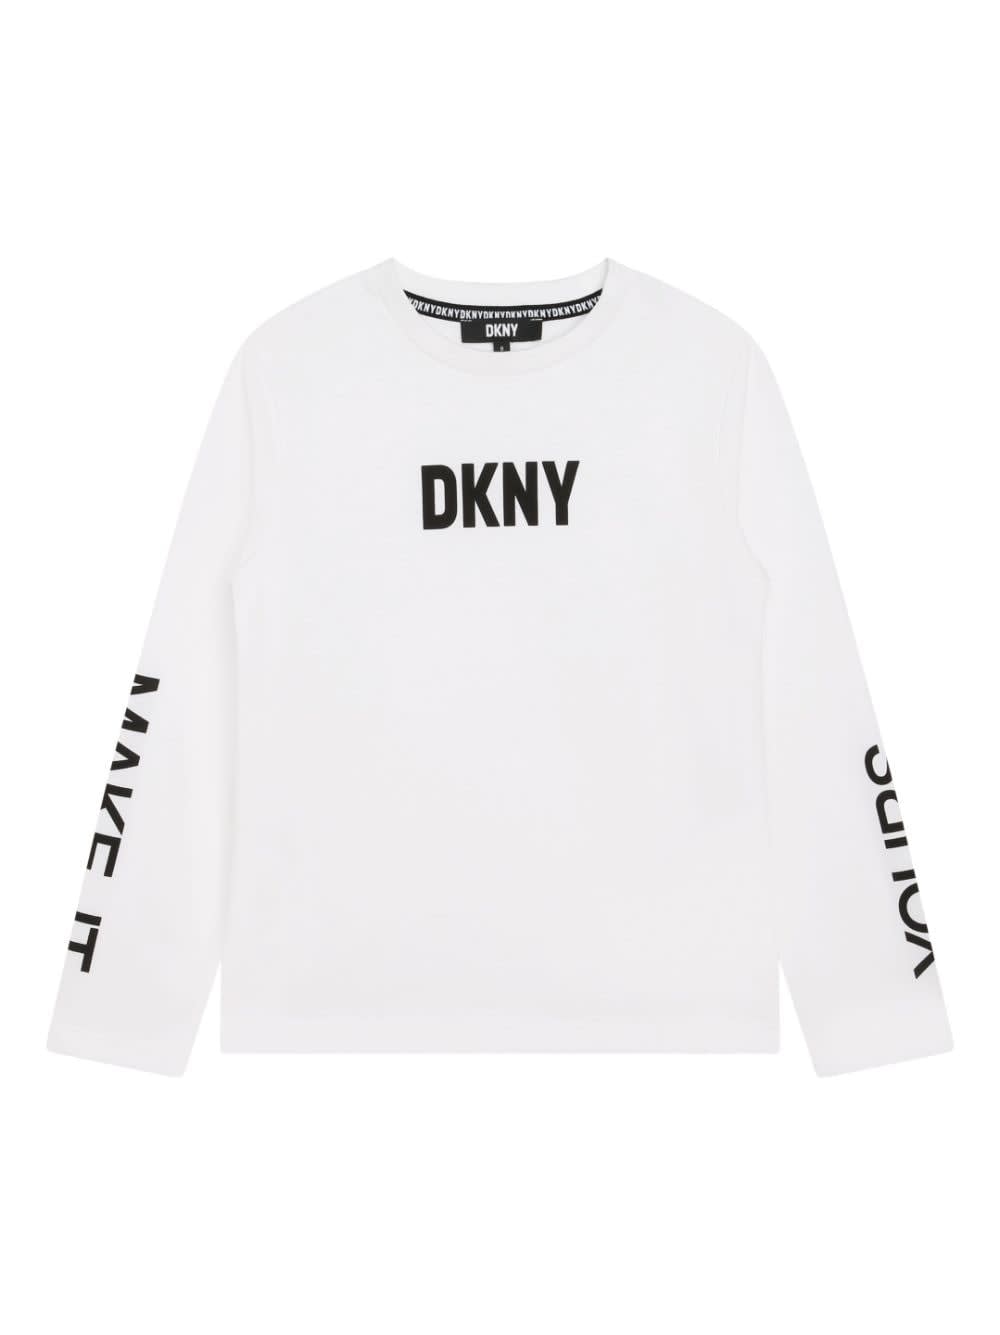 Dkny T-shirt Bianco In Jersey Di Cotone Bambino